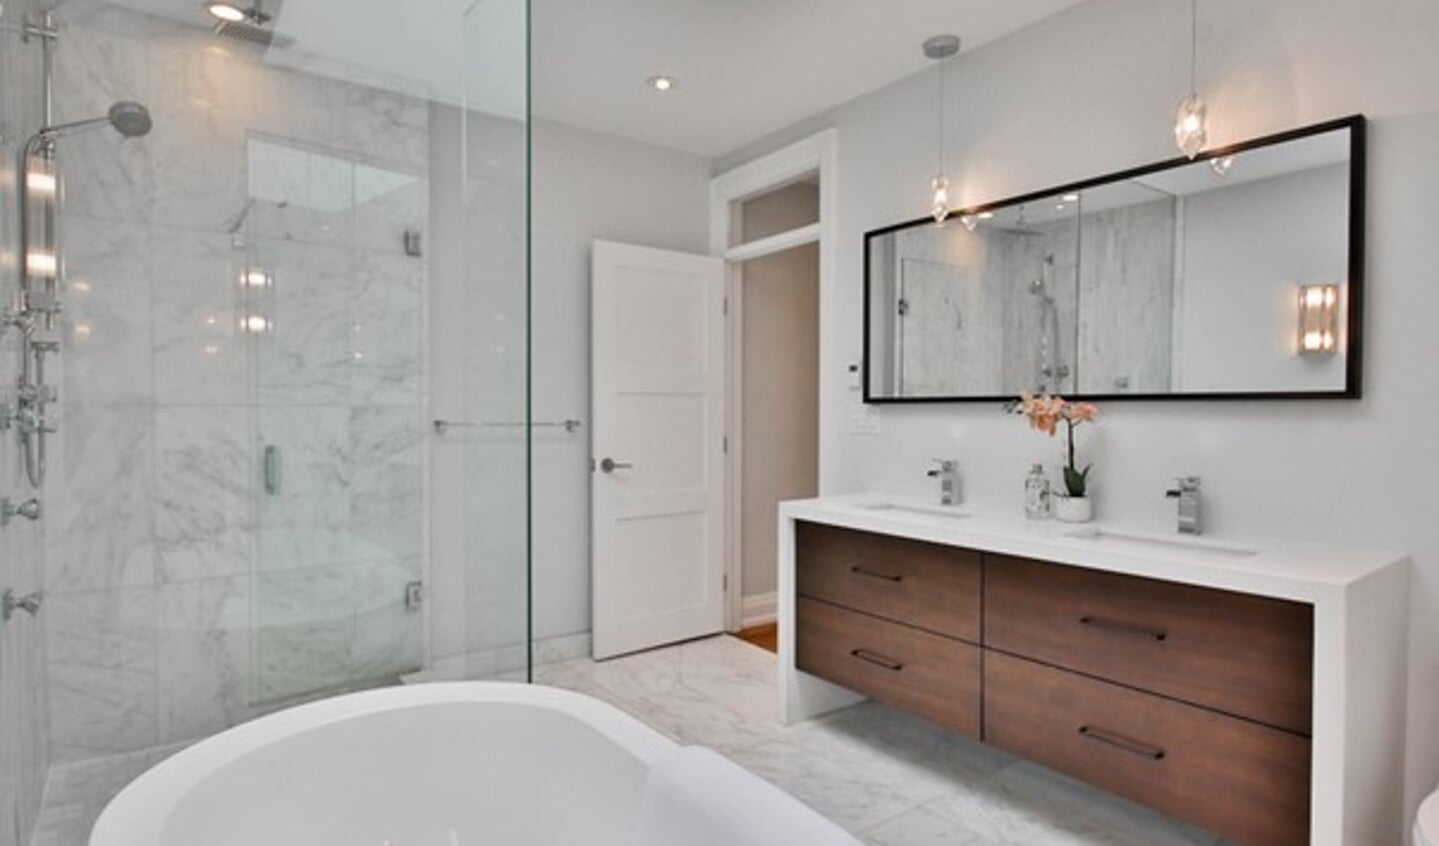 Hoe kies je een badkamermeubel dat er niet alleen prachtig uitziet maar dat ook aan al je eisen voldoet? 